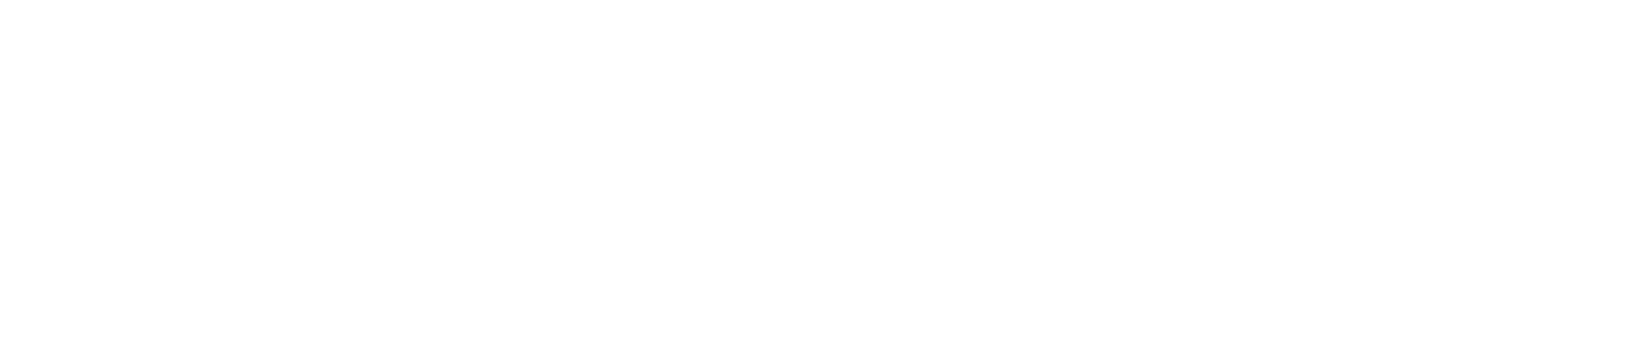 105-华人策略celue